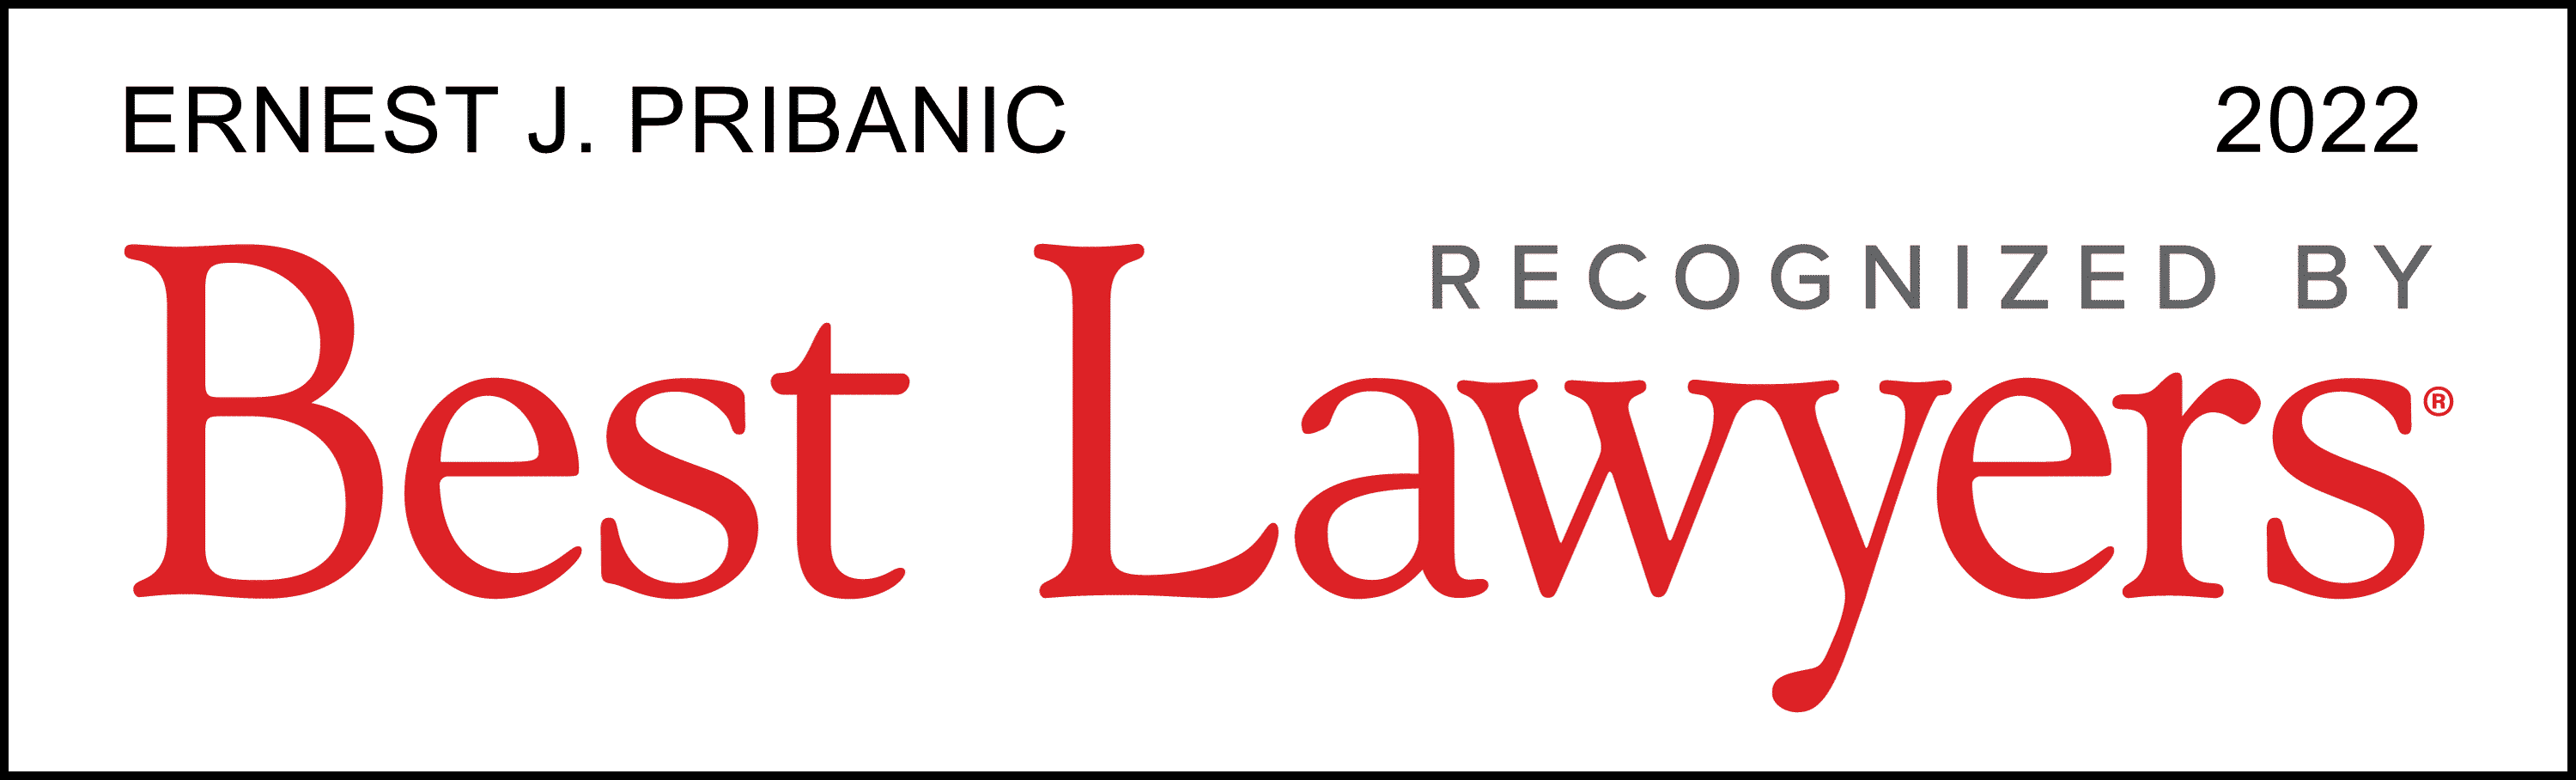 best-lawyers-lawyer-logo